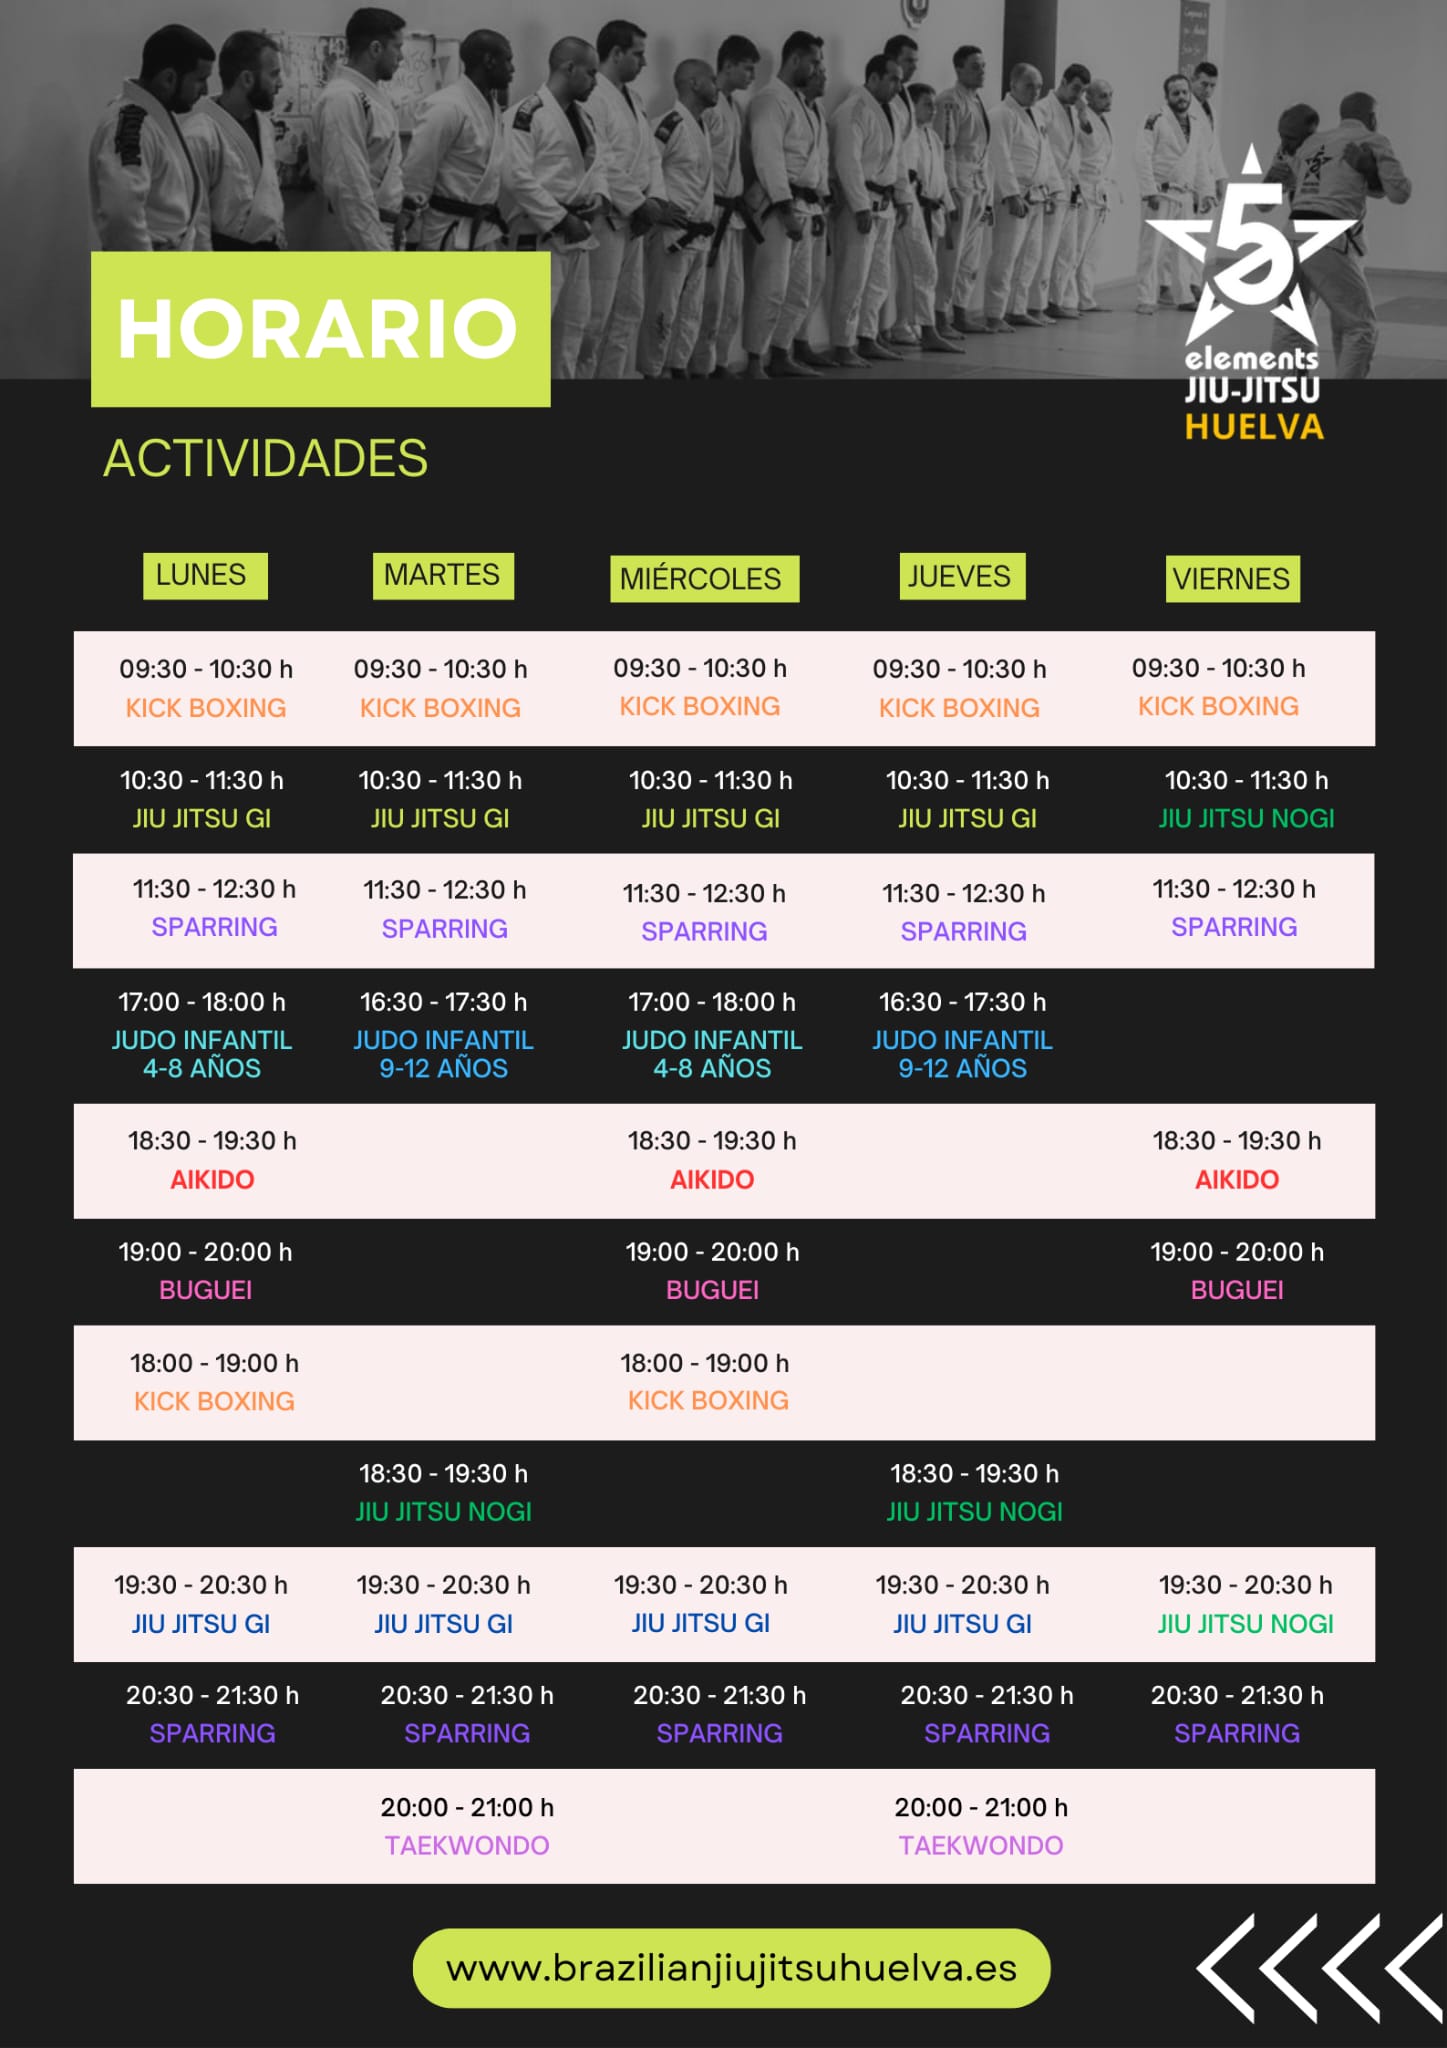 Horario Five Elements Jiu-Jitsu Huelva